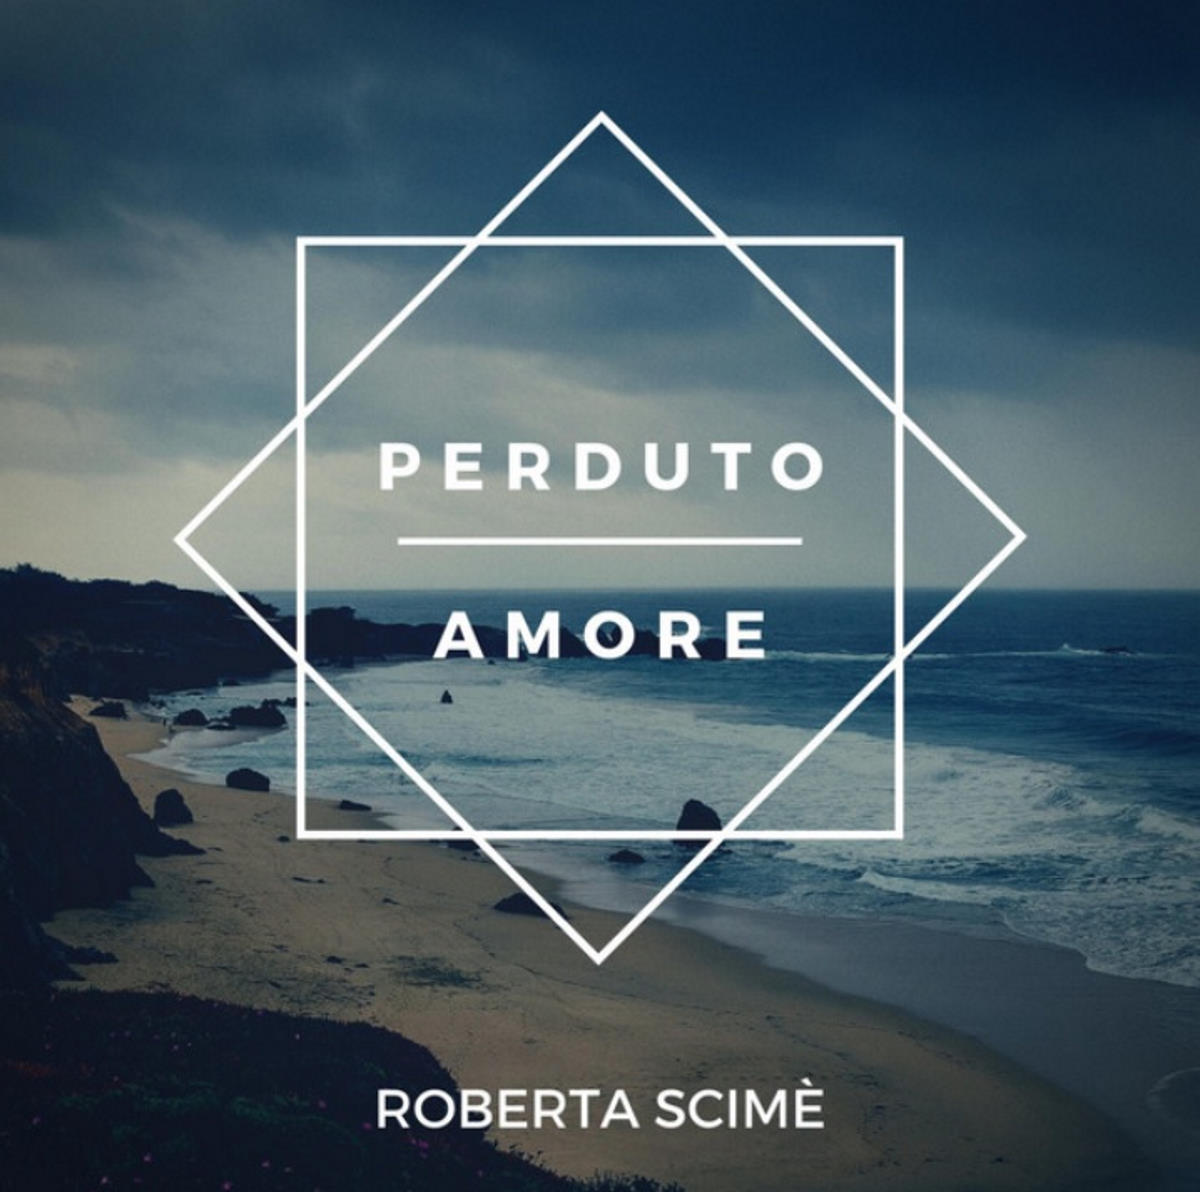 Perduto amore: il nuovo singolo della cantautrice Roberta Scimè